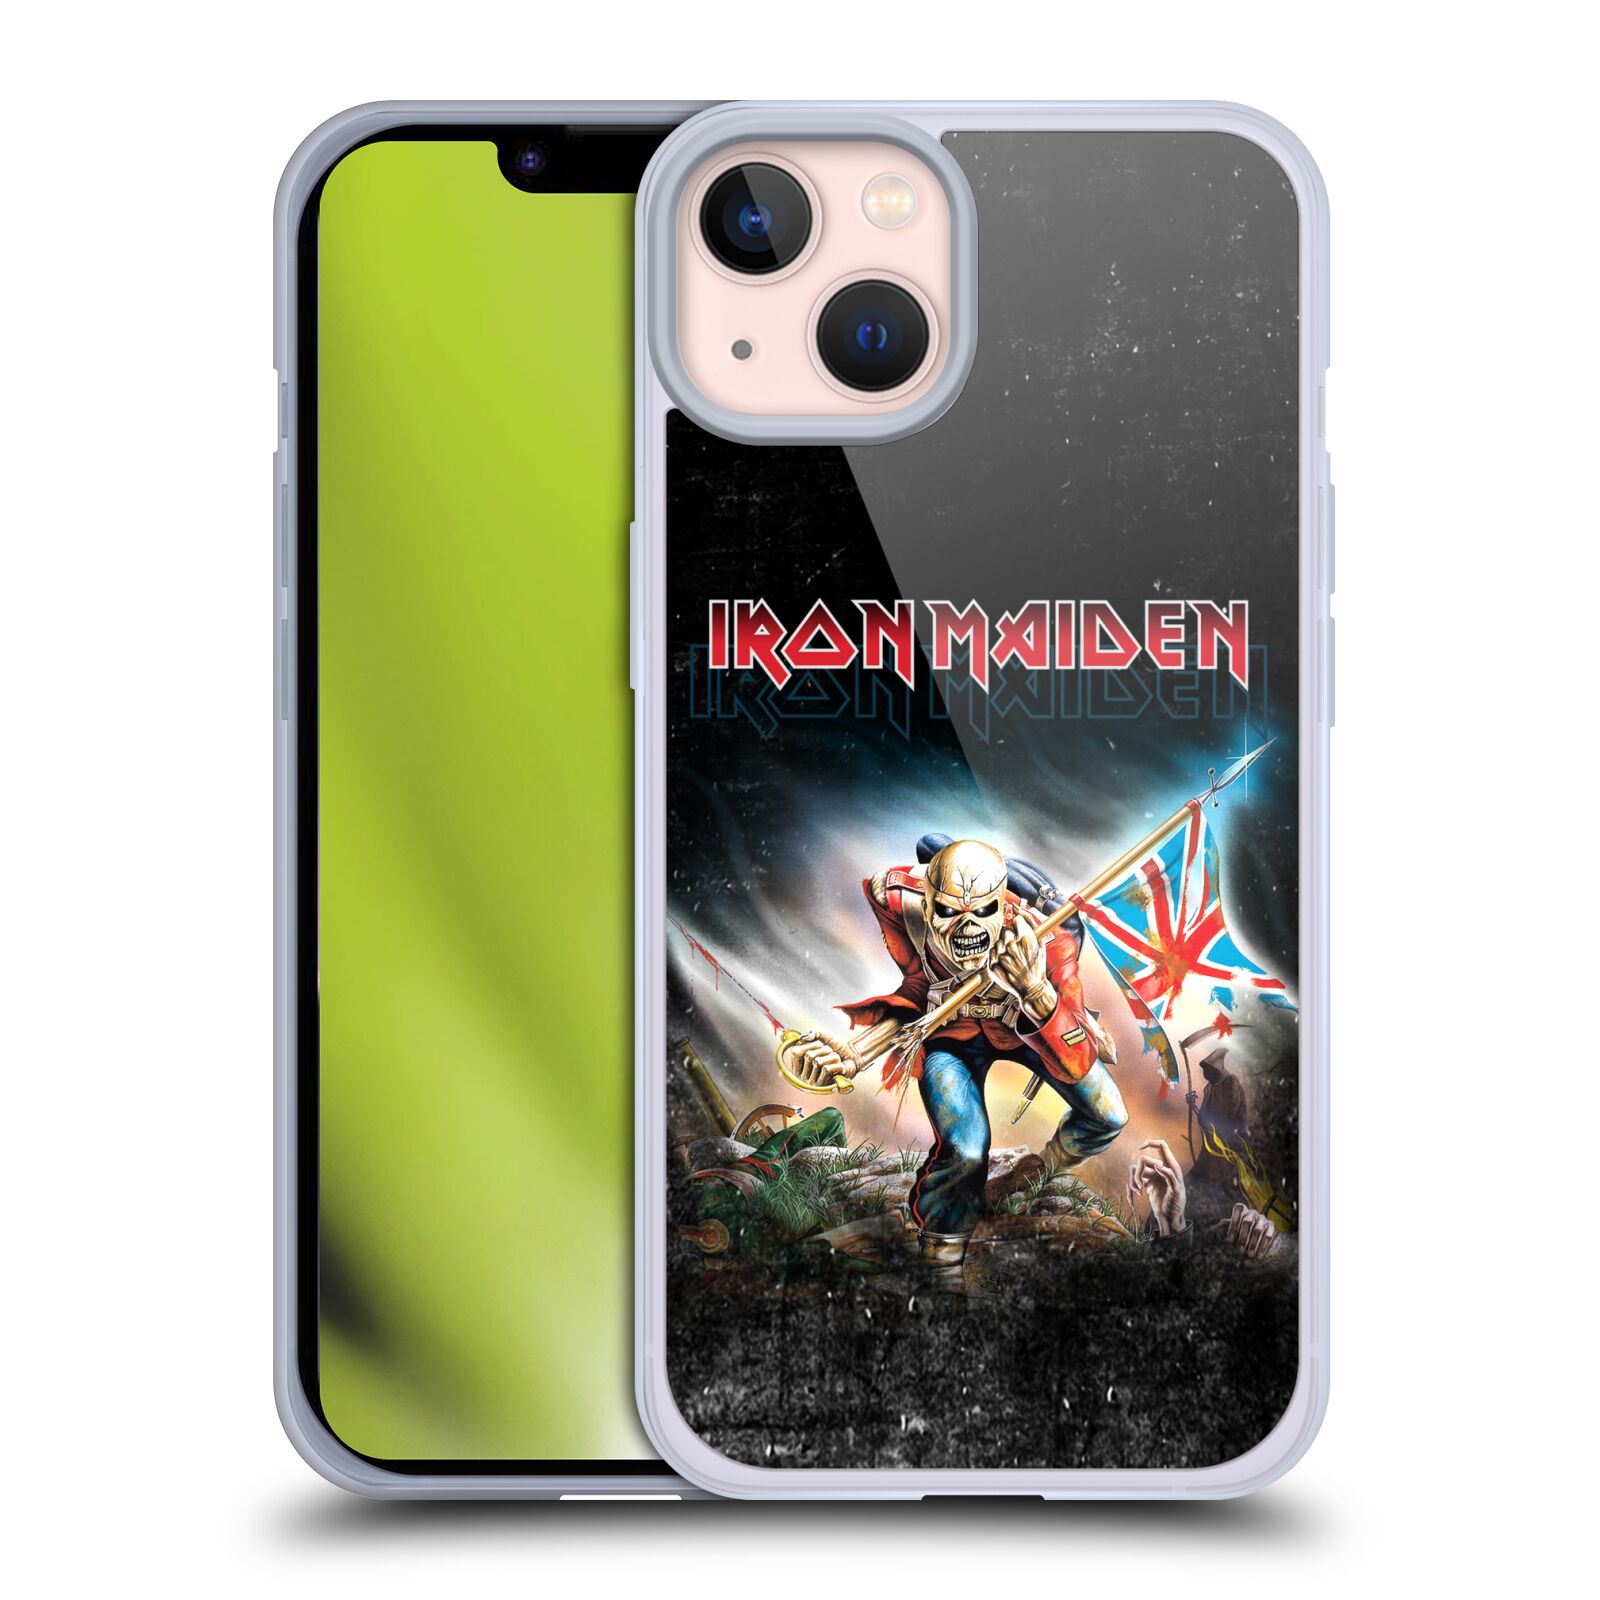 Silikonové pouzdro na mobil Apple iPhone 13 - Head Case - Iron Maiden - Trooper 2016 (Silikonový kryt, obal, pouzdro na mobilní telefon Apple iPhone 13 s motivem Iron Maiden - Trooper 2016)